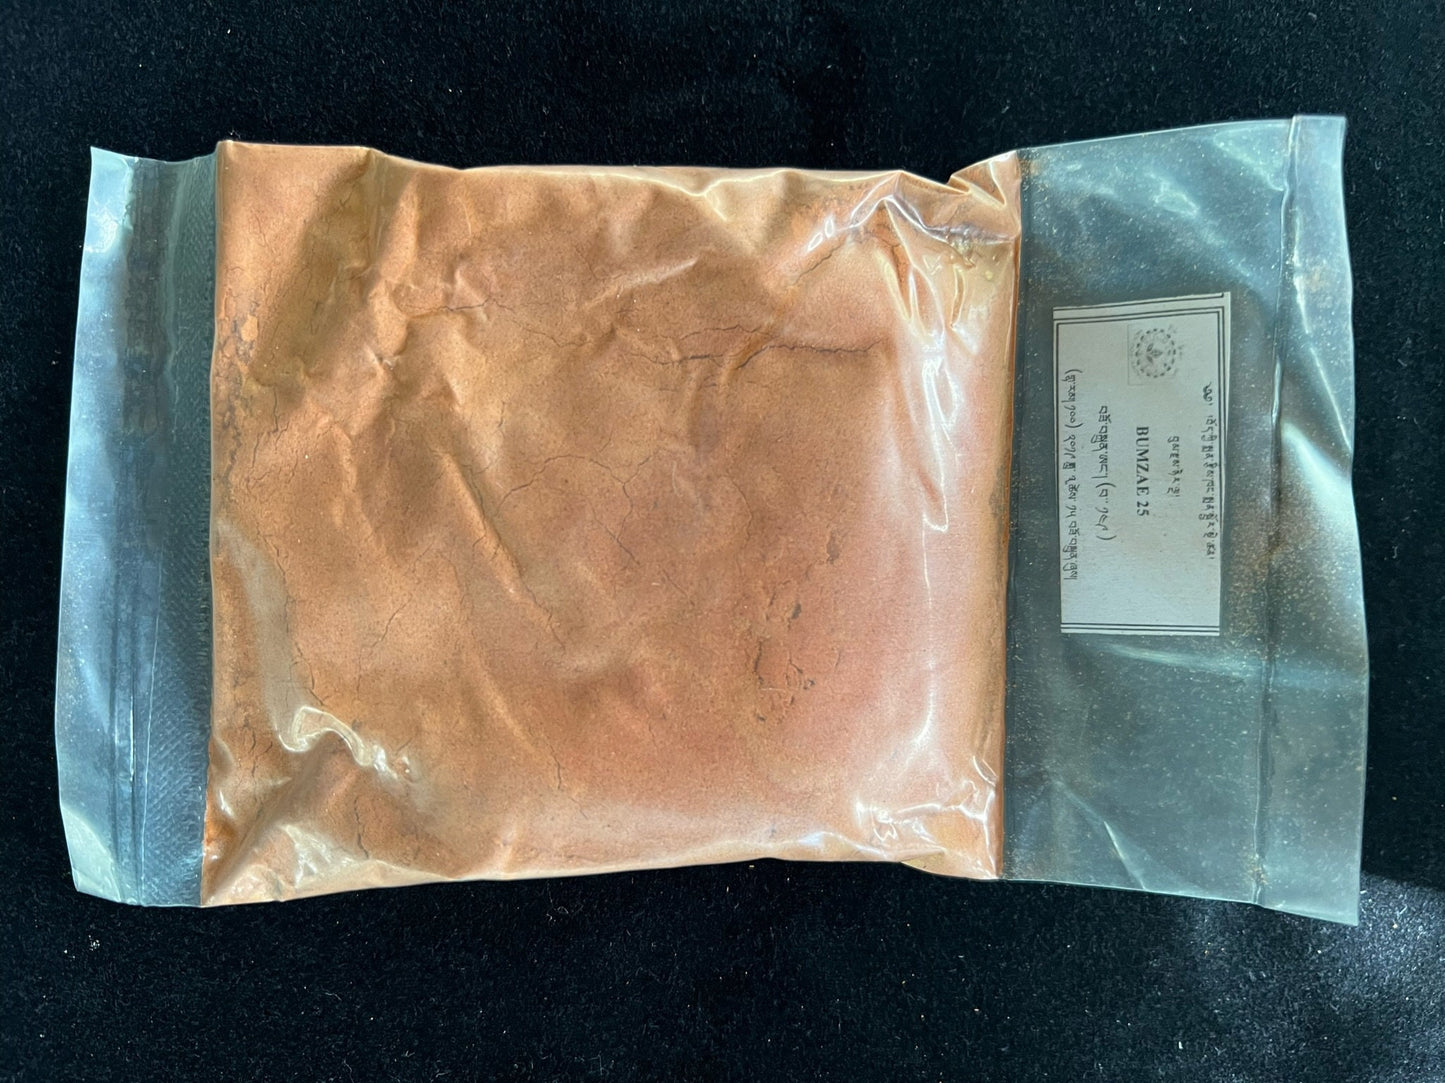 Sorig Bumzae Nyernga 25 Powder| 50 grams